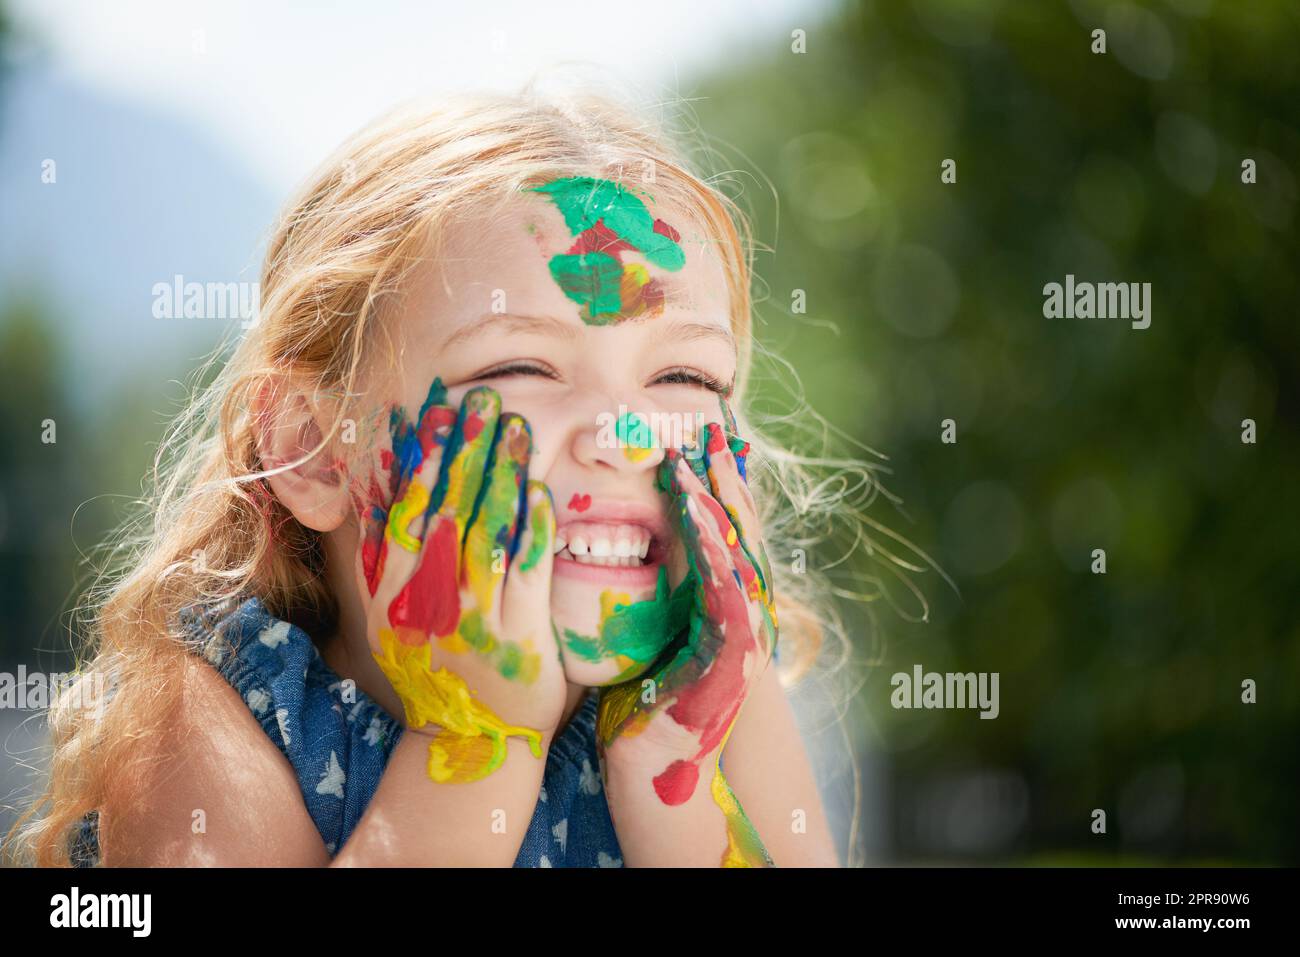 La felicità può essere trovata in una vasca di vernice. Una ragazza piccola felice coperta di vernice. Foto Stock